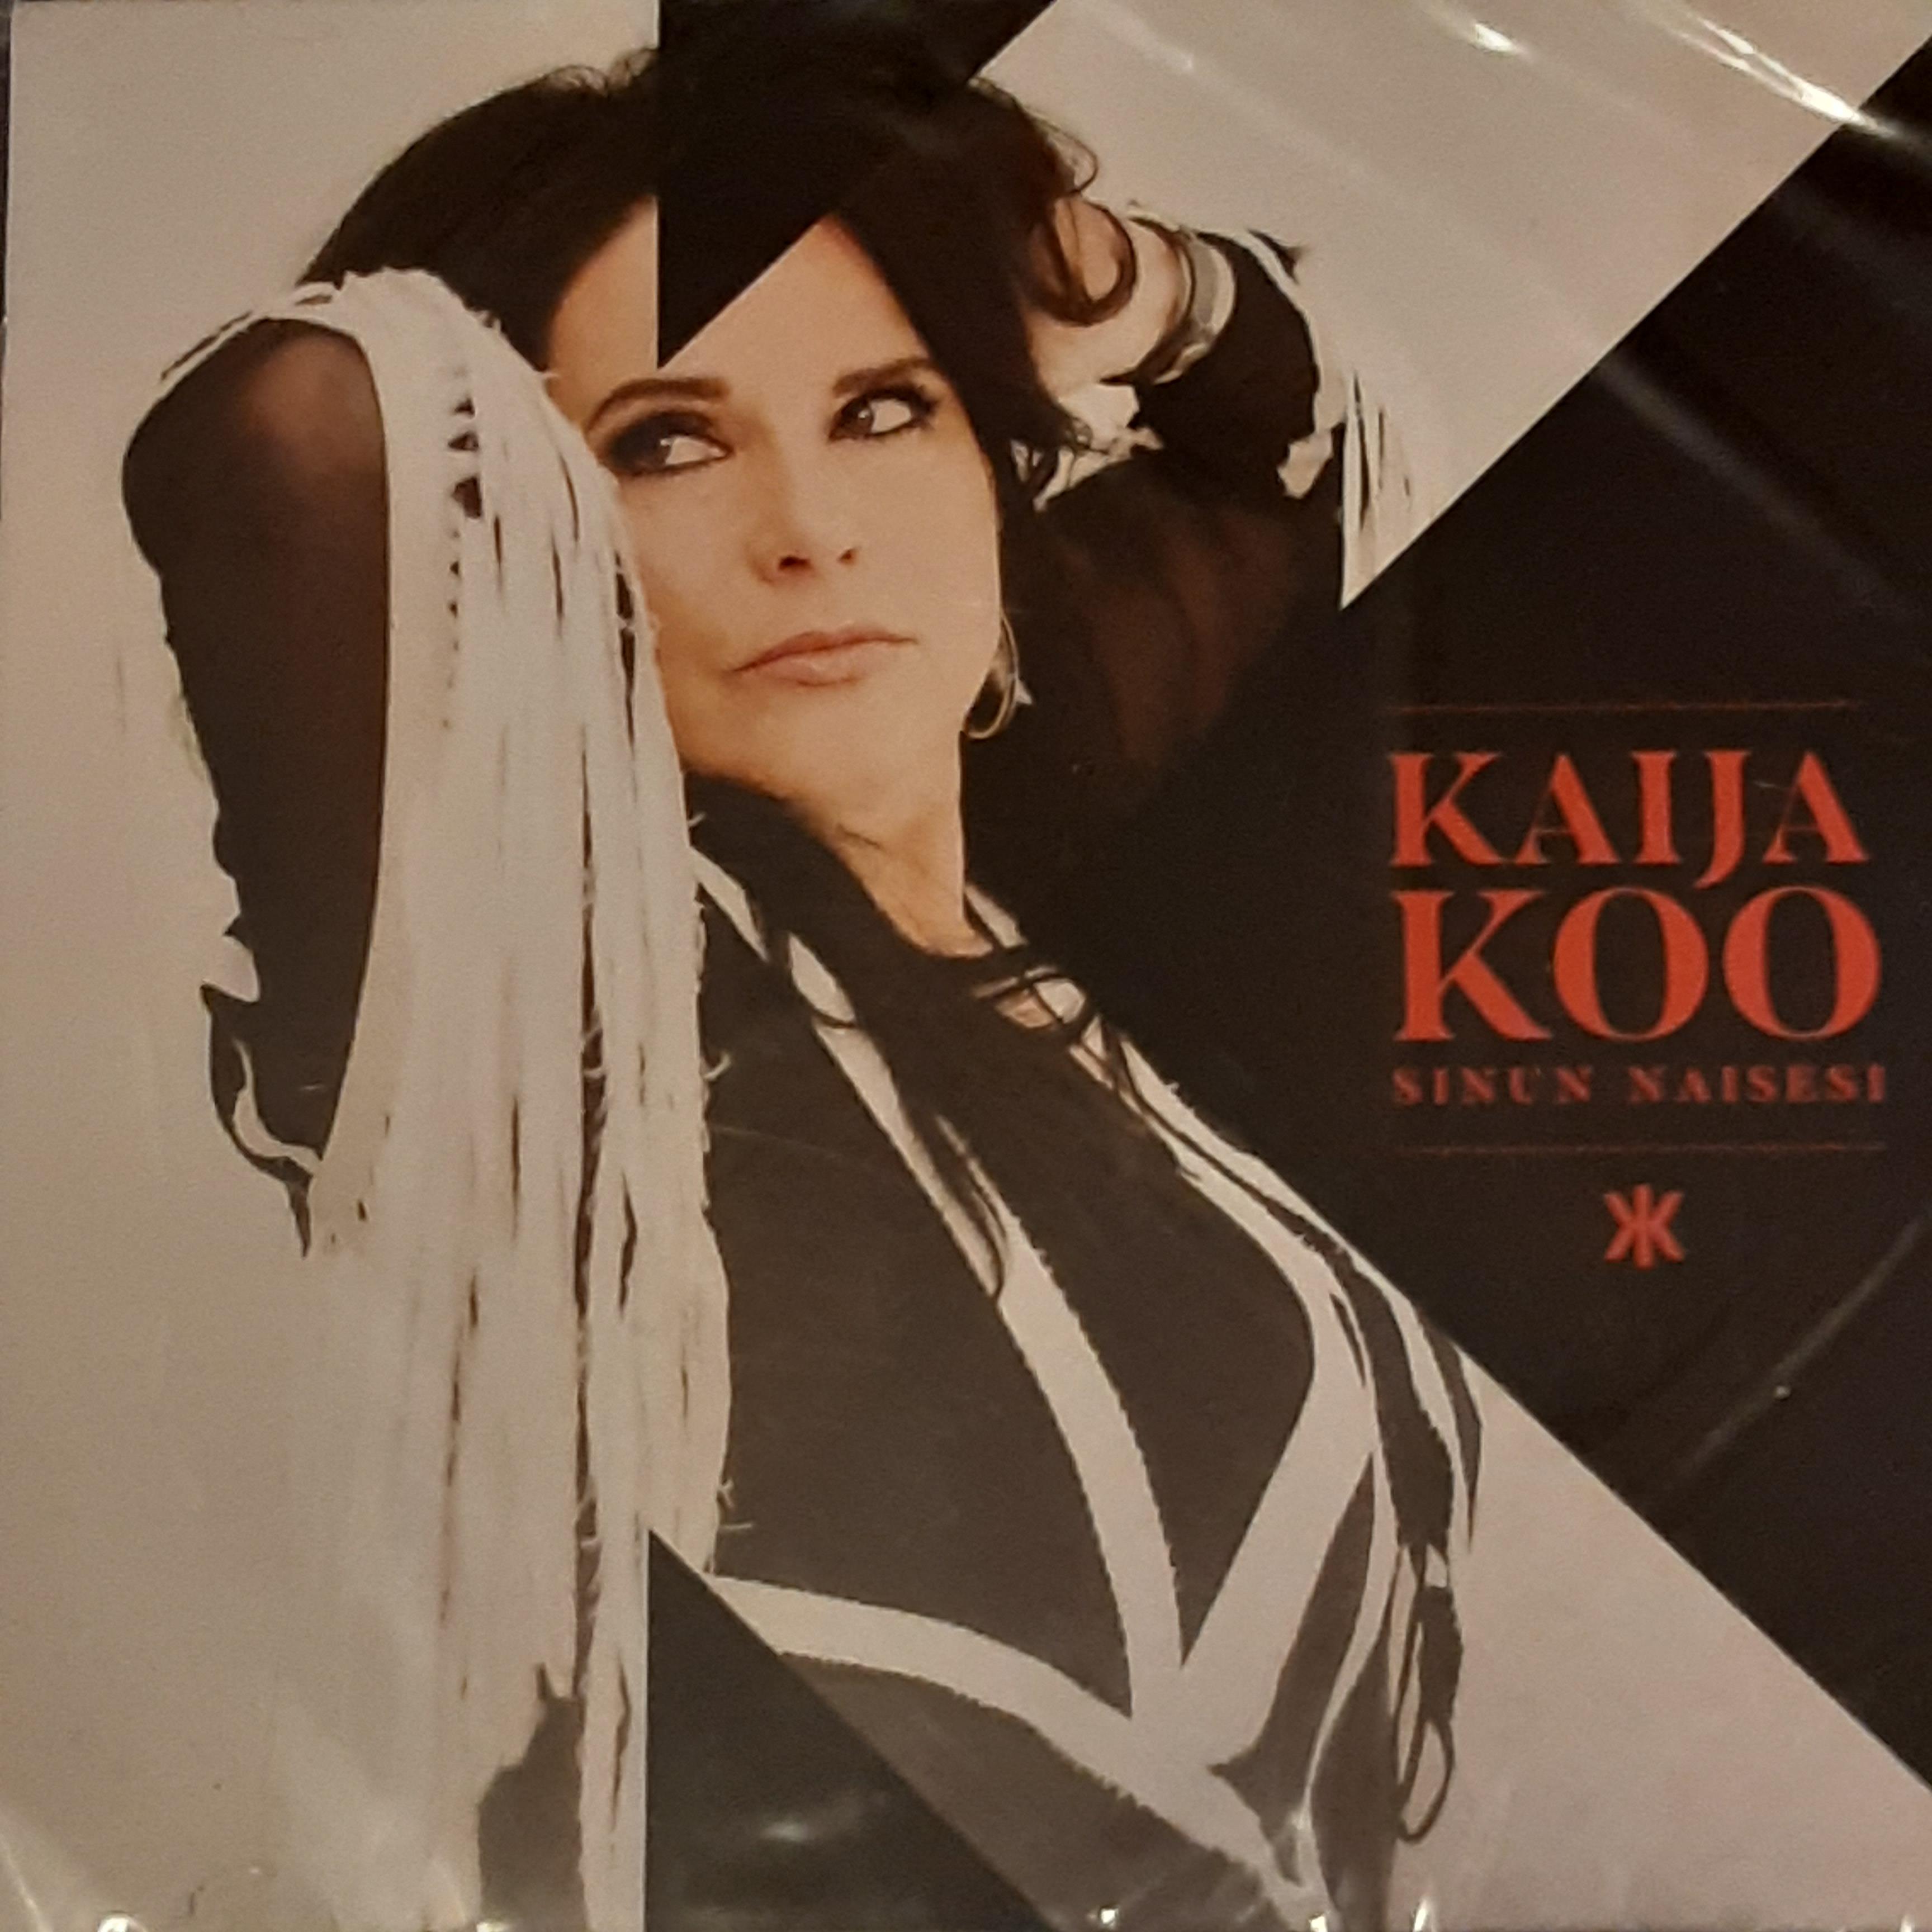 Kaija Koo - Sinun naisesi - CD (uusi)